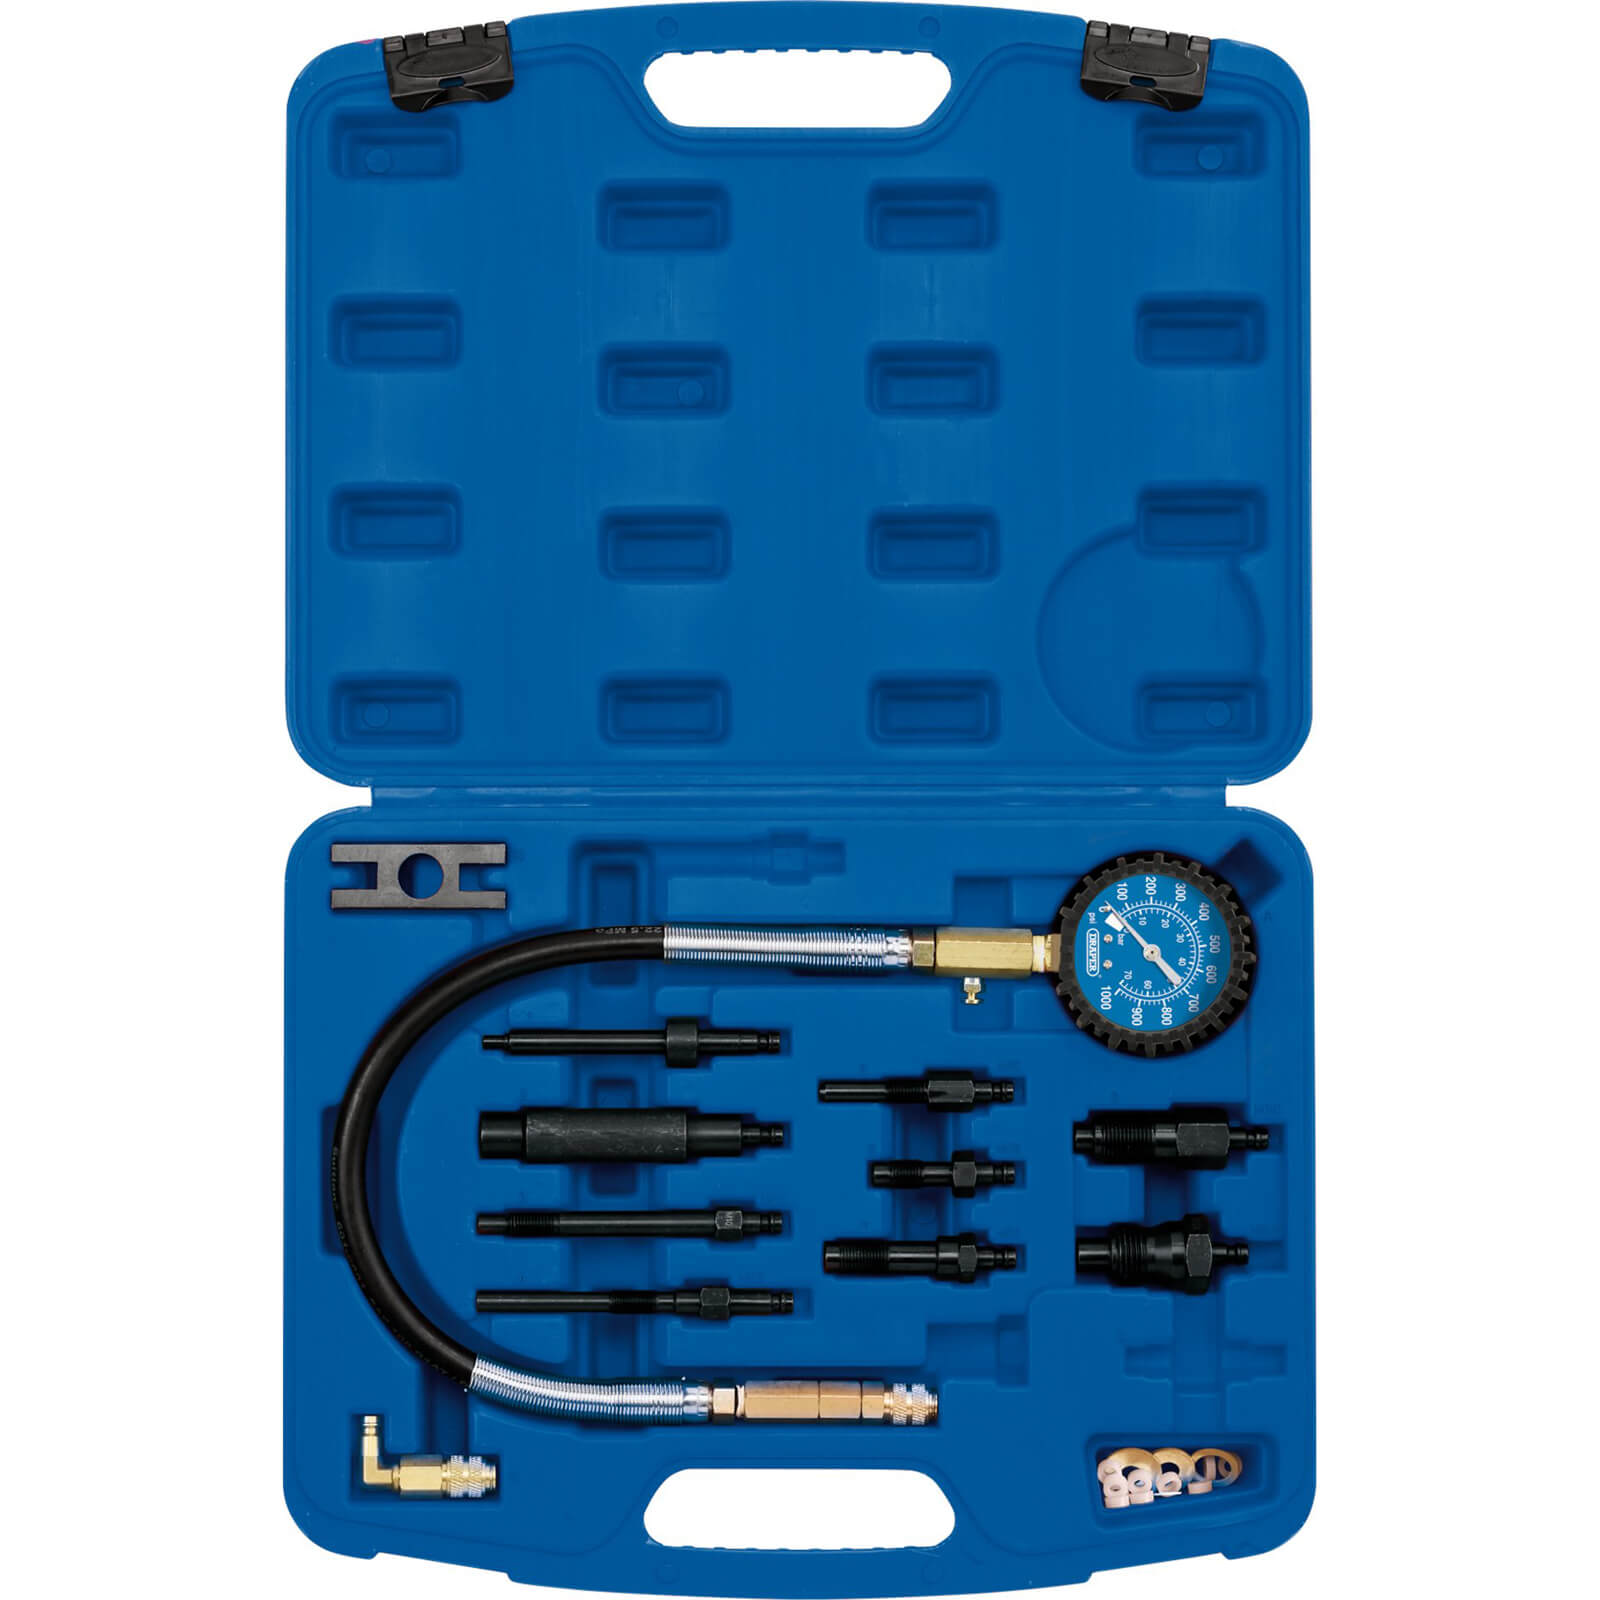 Draper 12 Piece Diesel Compression Test Tool Kit